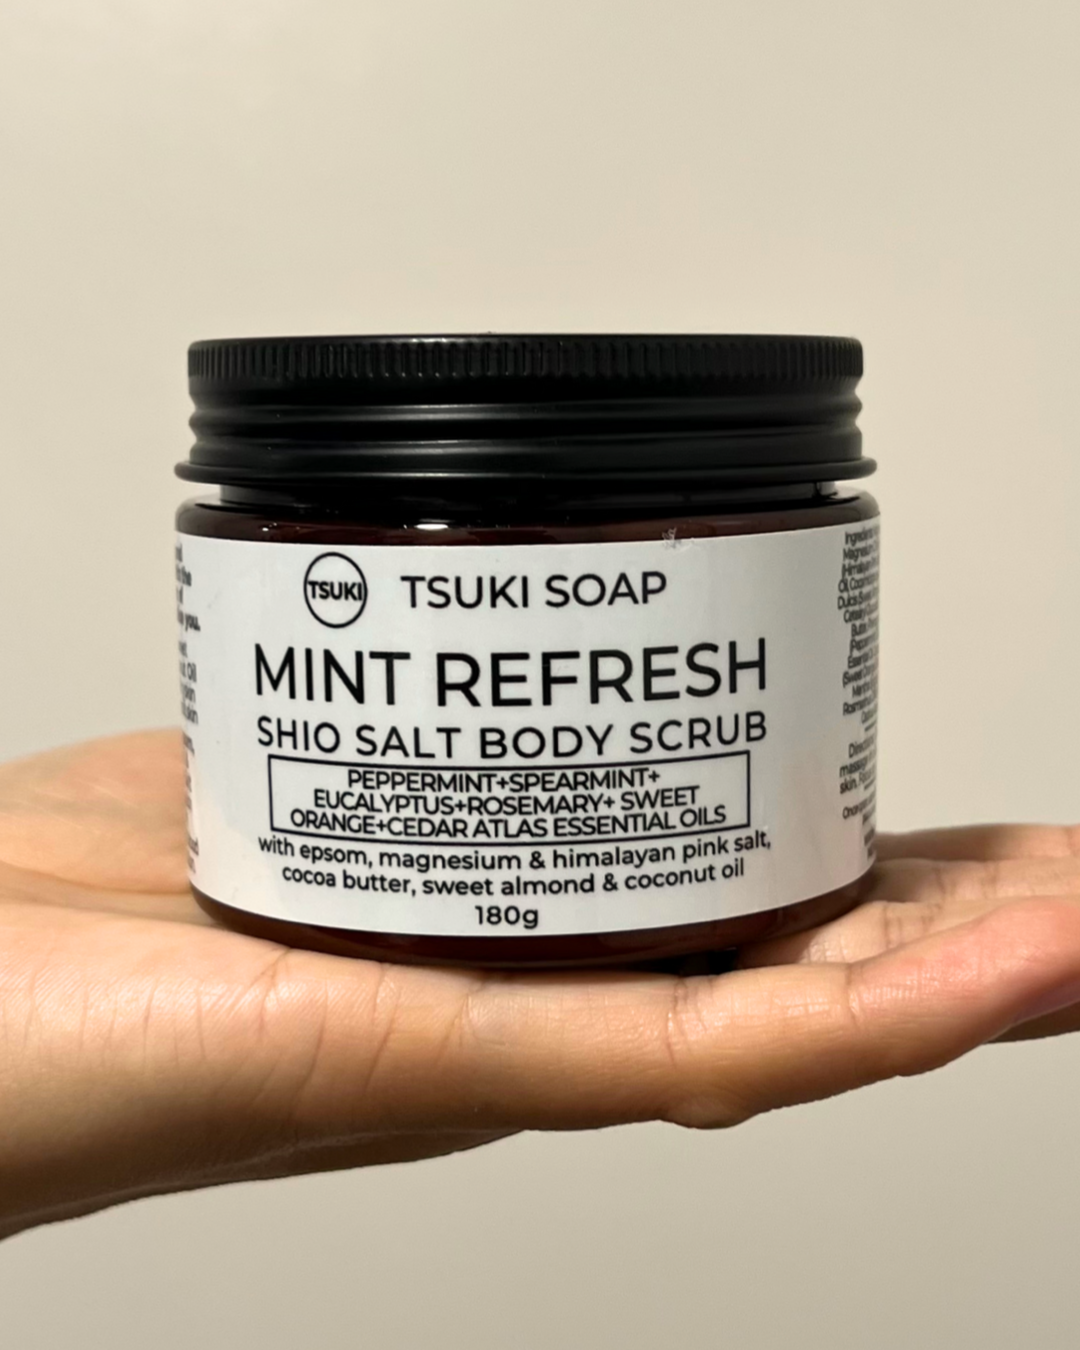 Mint Refresh - Shio Salt Body Scrub